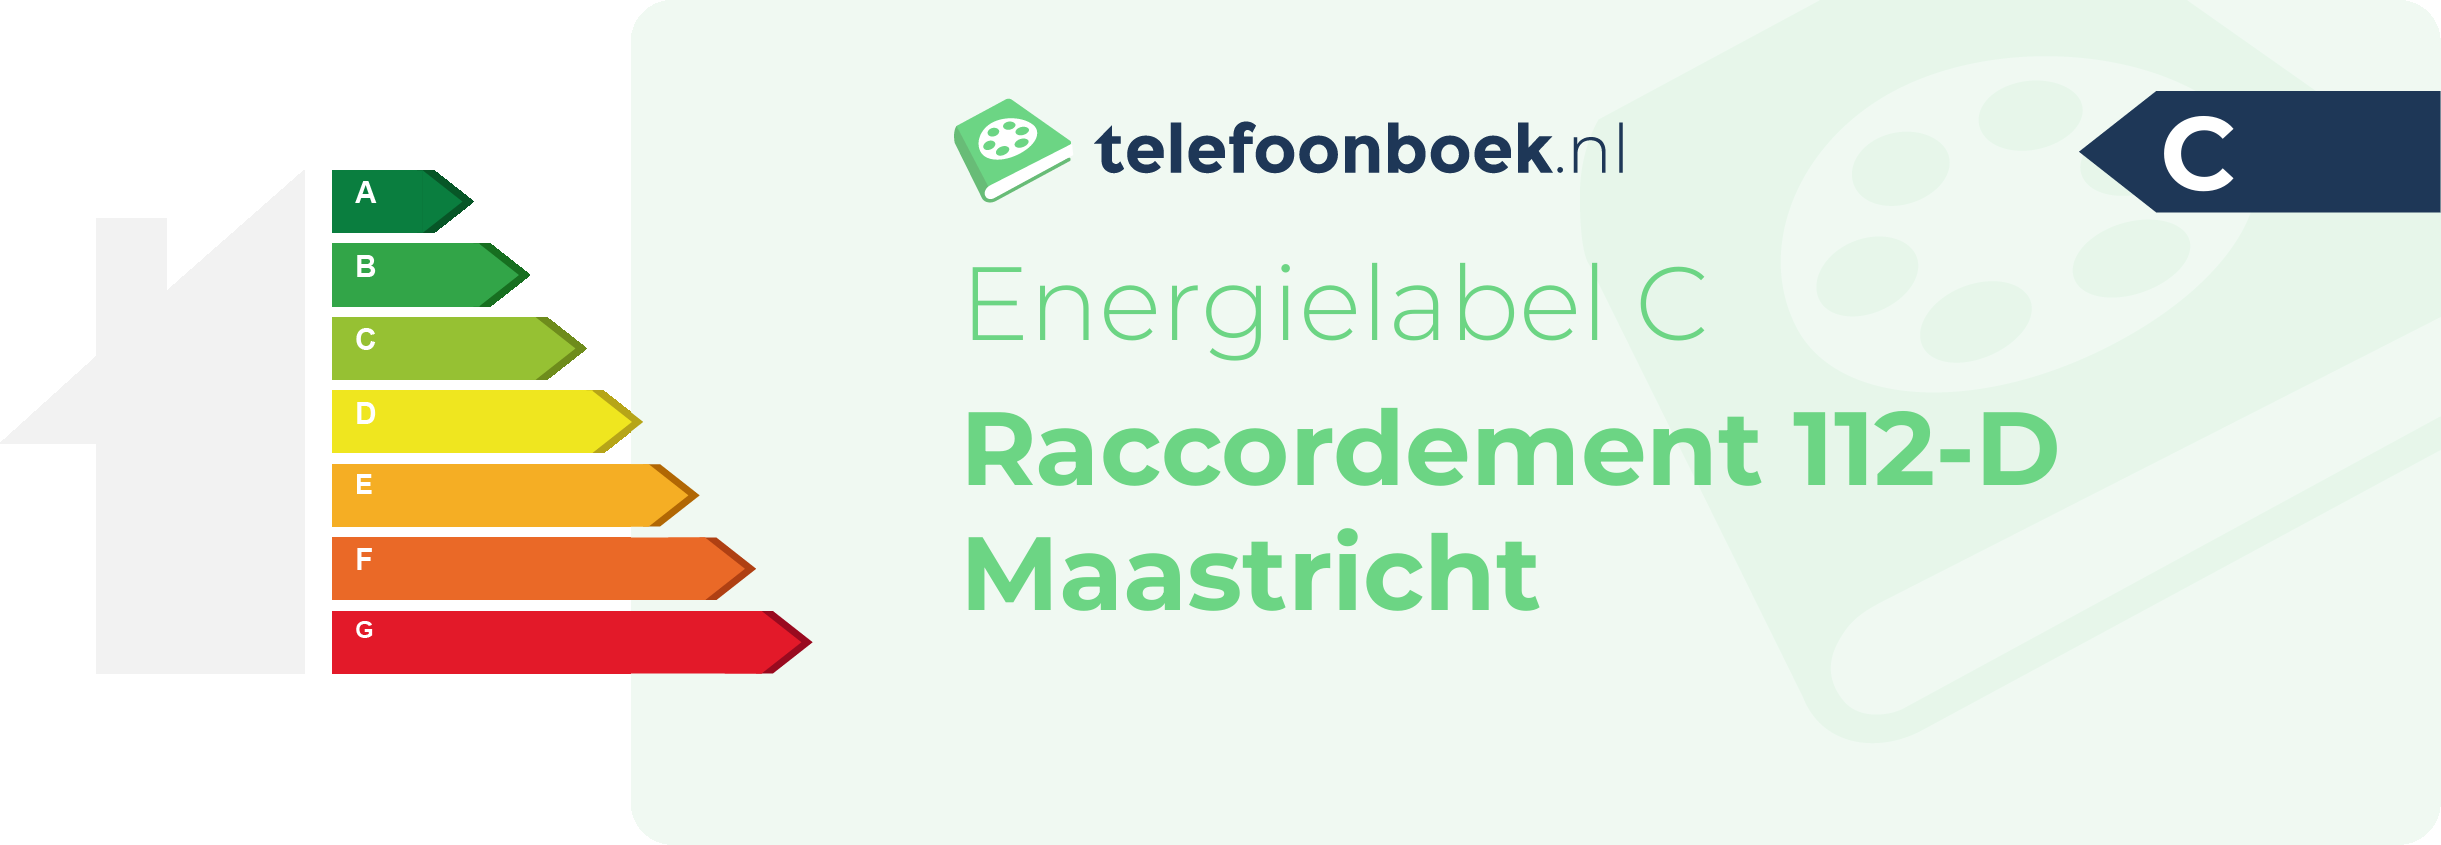 Energielabel Raccordement 112-D Maastricht